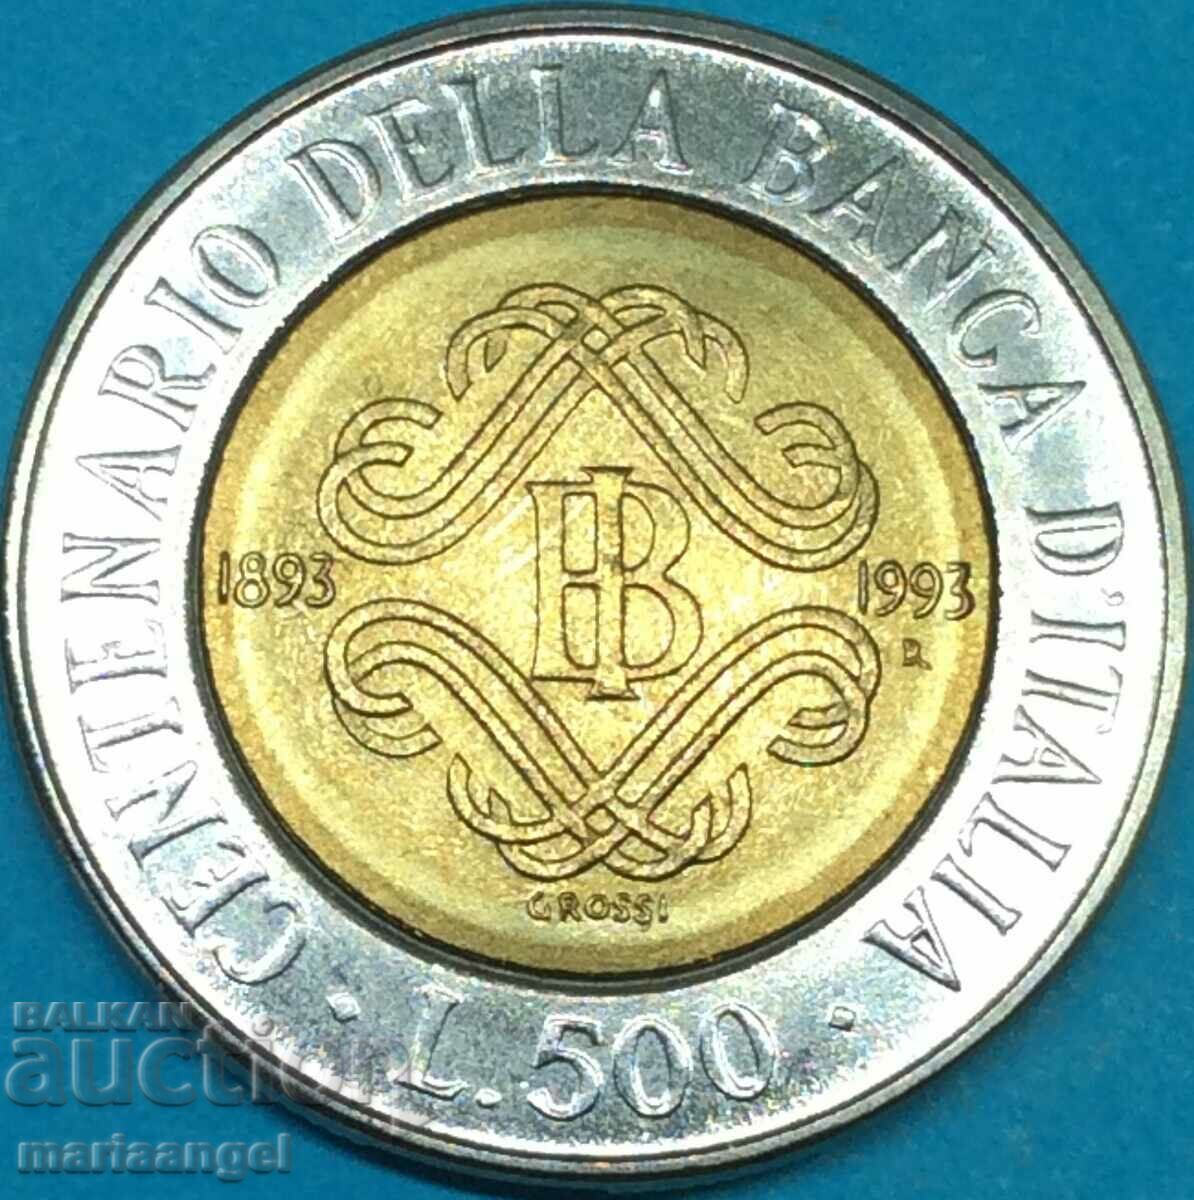 500 λιρέτες 1993 Κεντρική Τράπεζα Ιταλίας